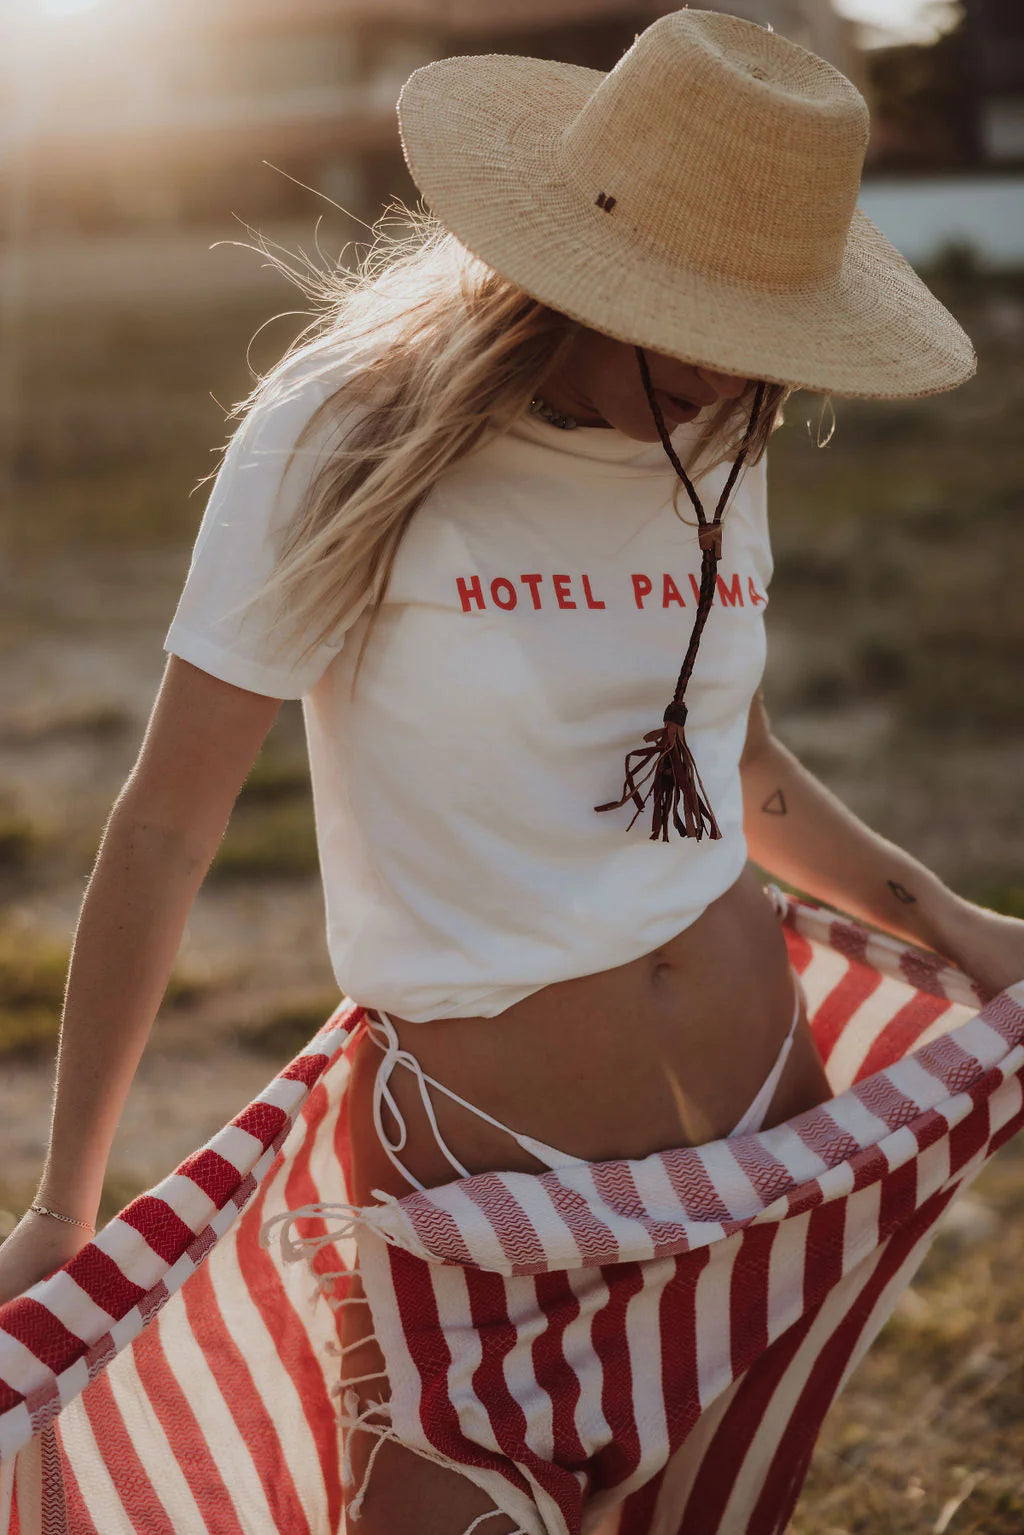 Little Palma - Hotel Palma (Red) T-Shirt